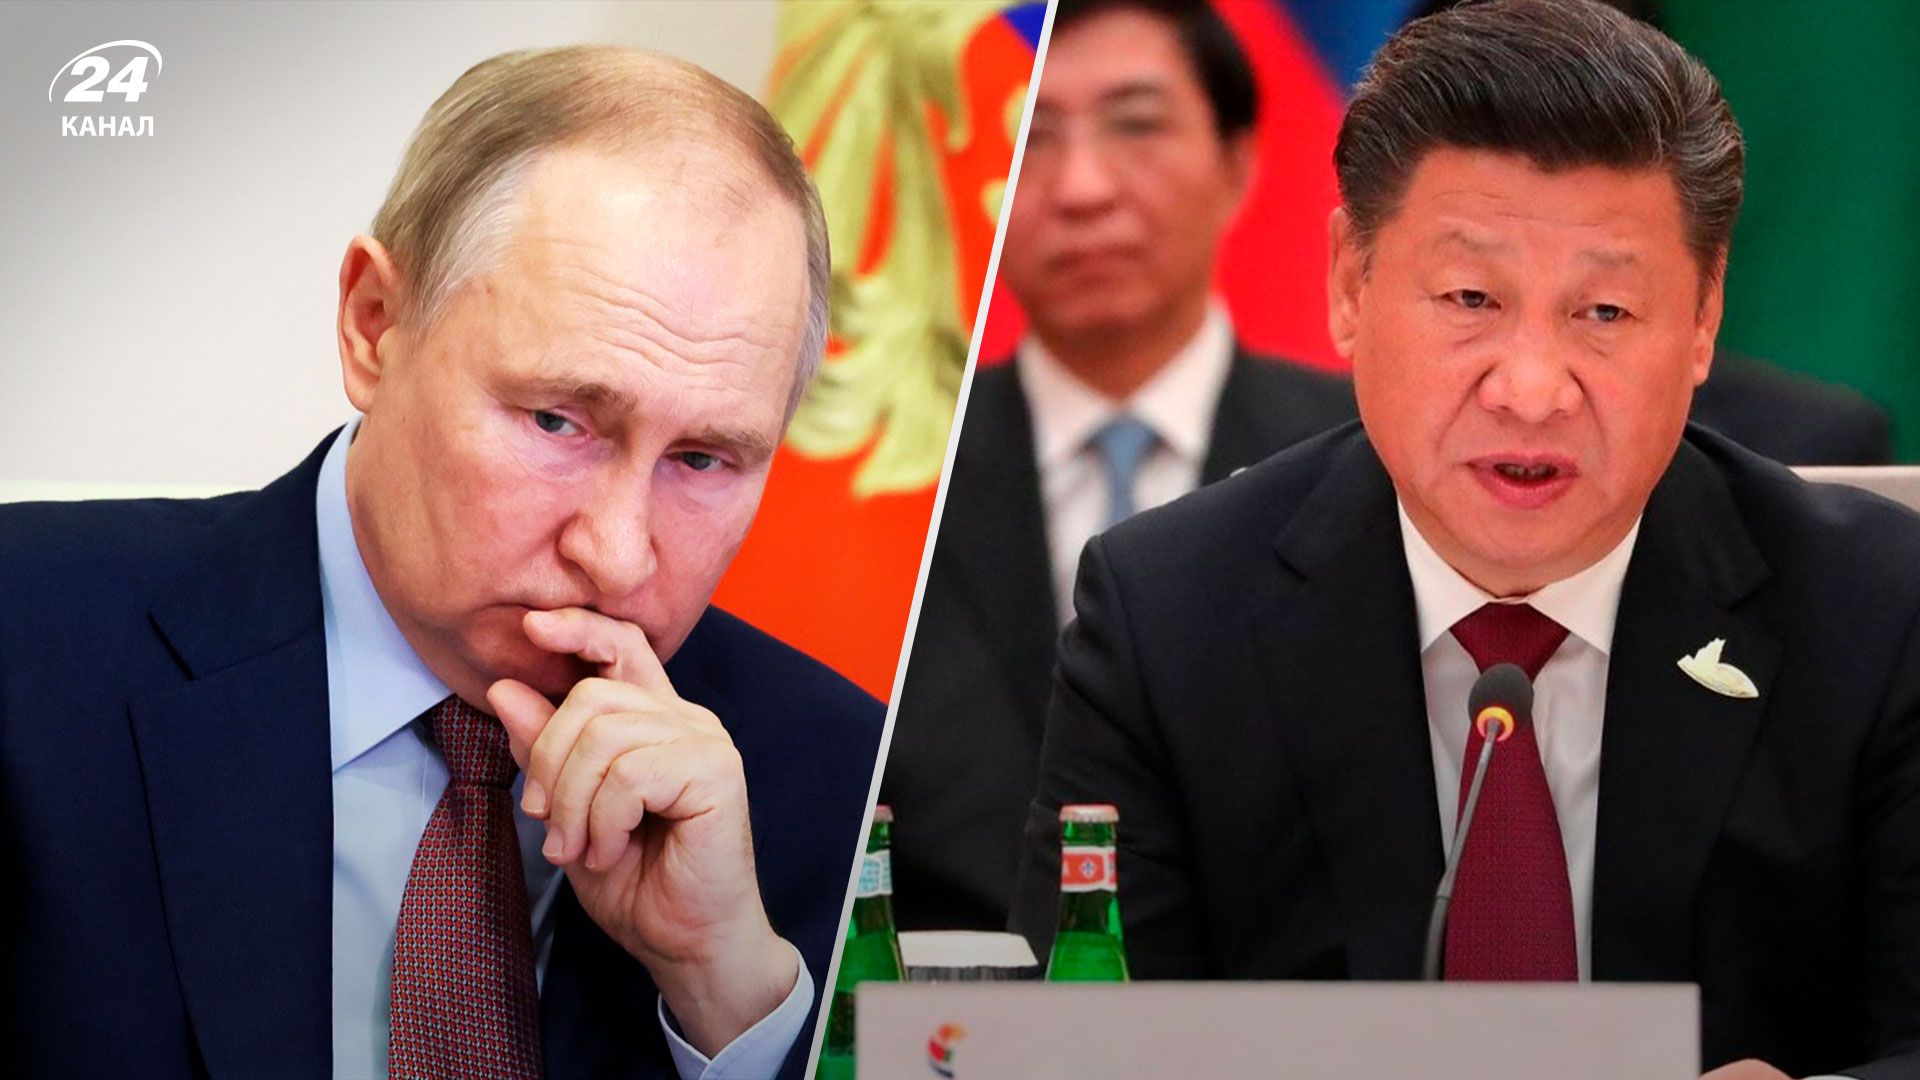 Си Цзиньпин в Москве - Путин не достиг целей - результаты встречи - 24 Канал